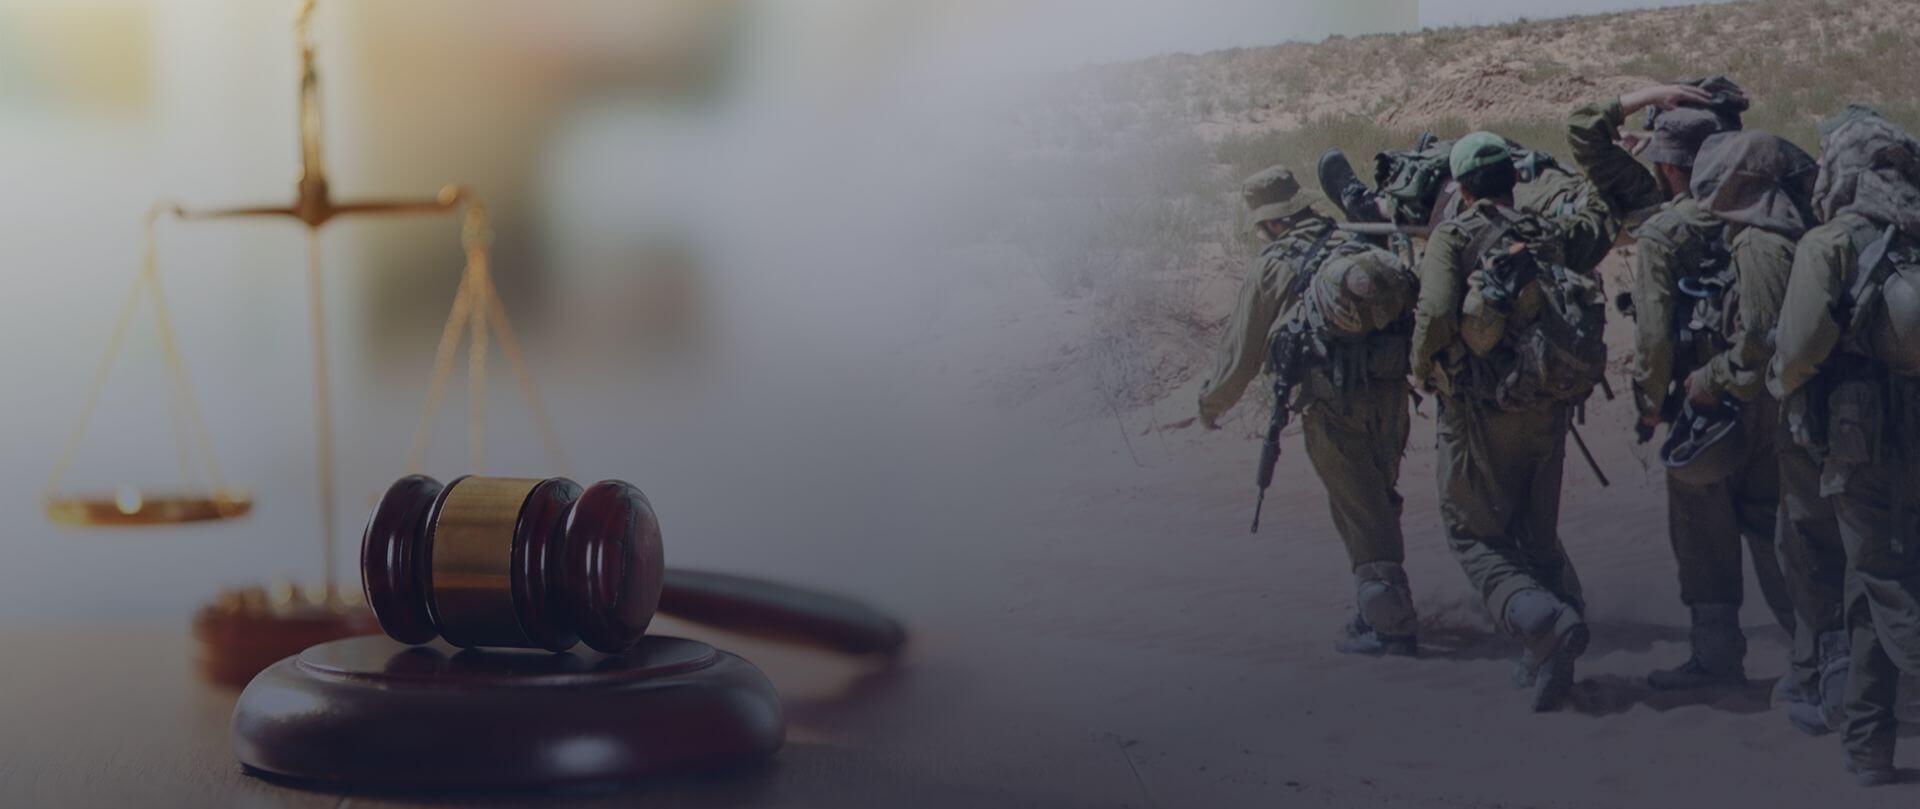 ייעוץ בחקירות מצ”ח וייצוג בבית הדין הצבאי